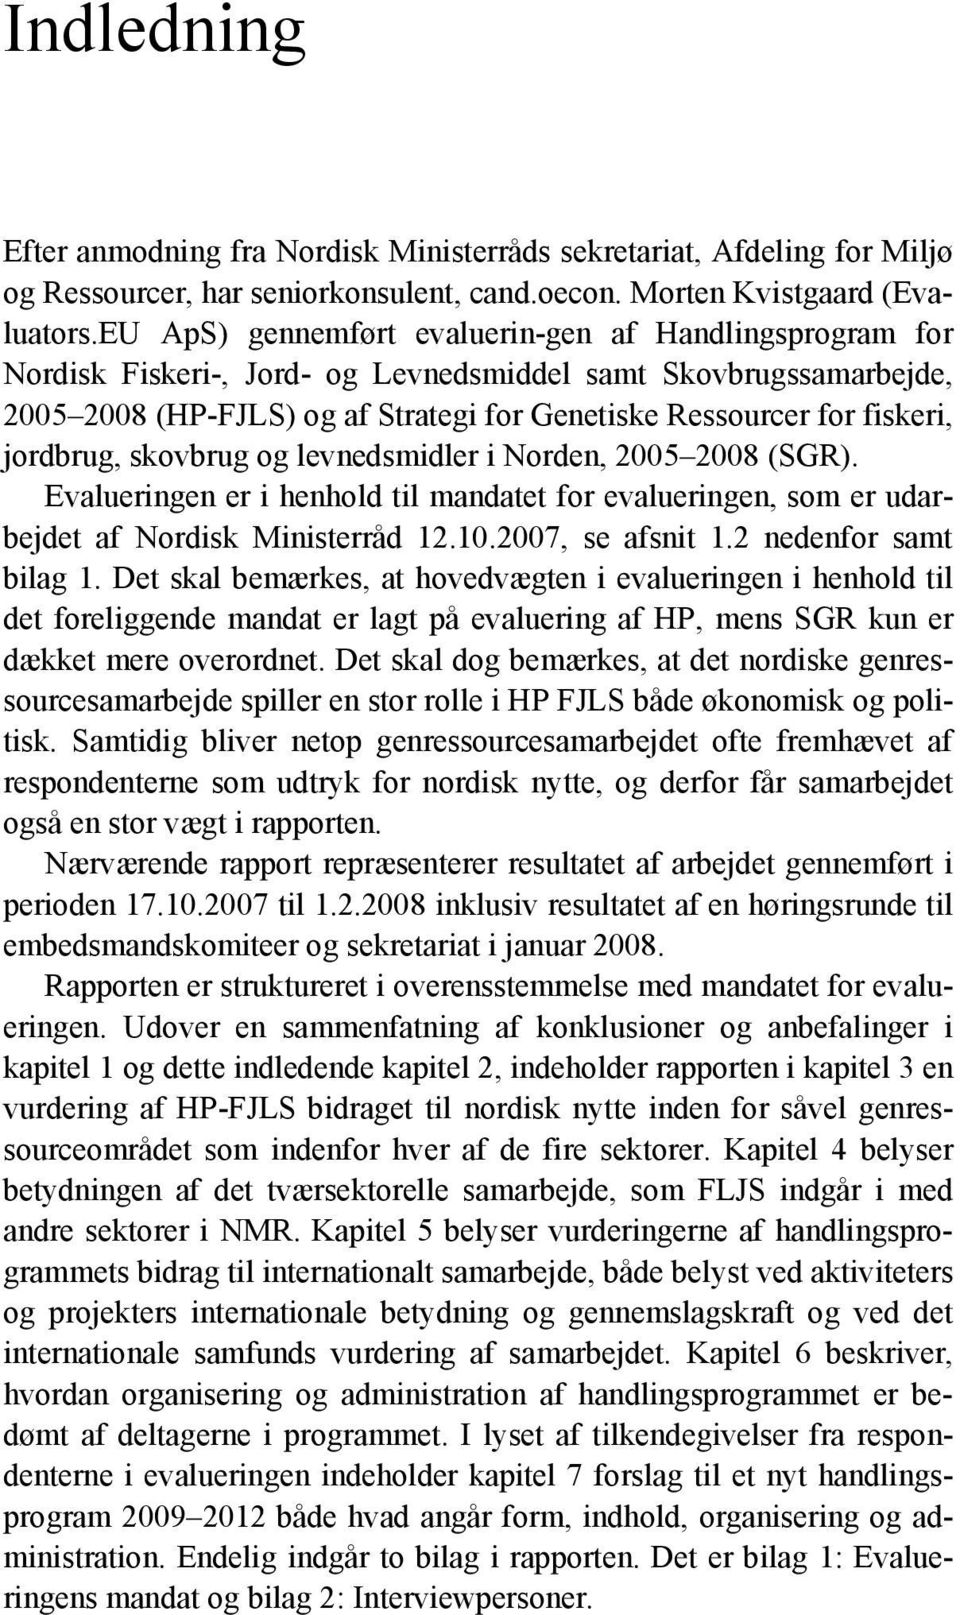 jordbrug, skovbrug og levnedsmidler i Norden, 2005 2008 (SGR). Evalueringen er i henhold til mandatet for evalueringen, som er udarbejdet af Nordisk Ministerråd 12.10.2007, se afsnit 1.